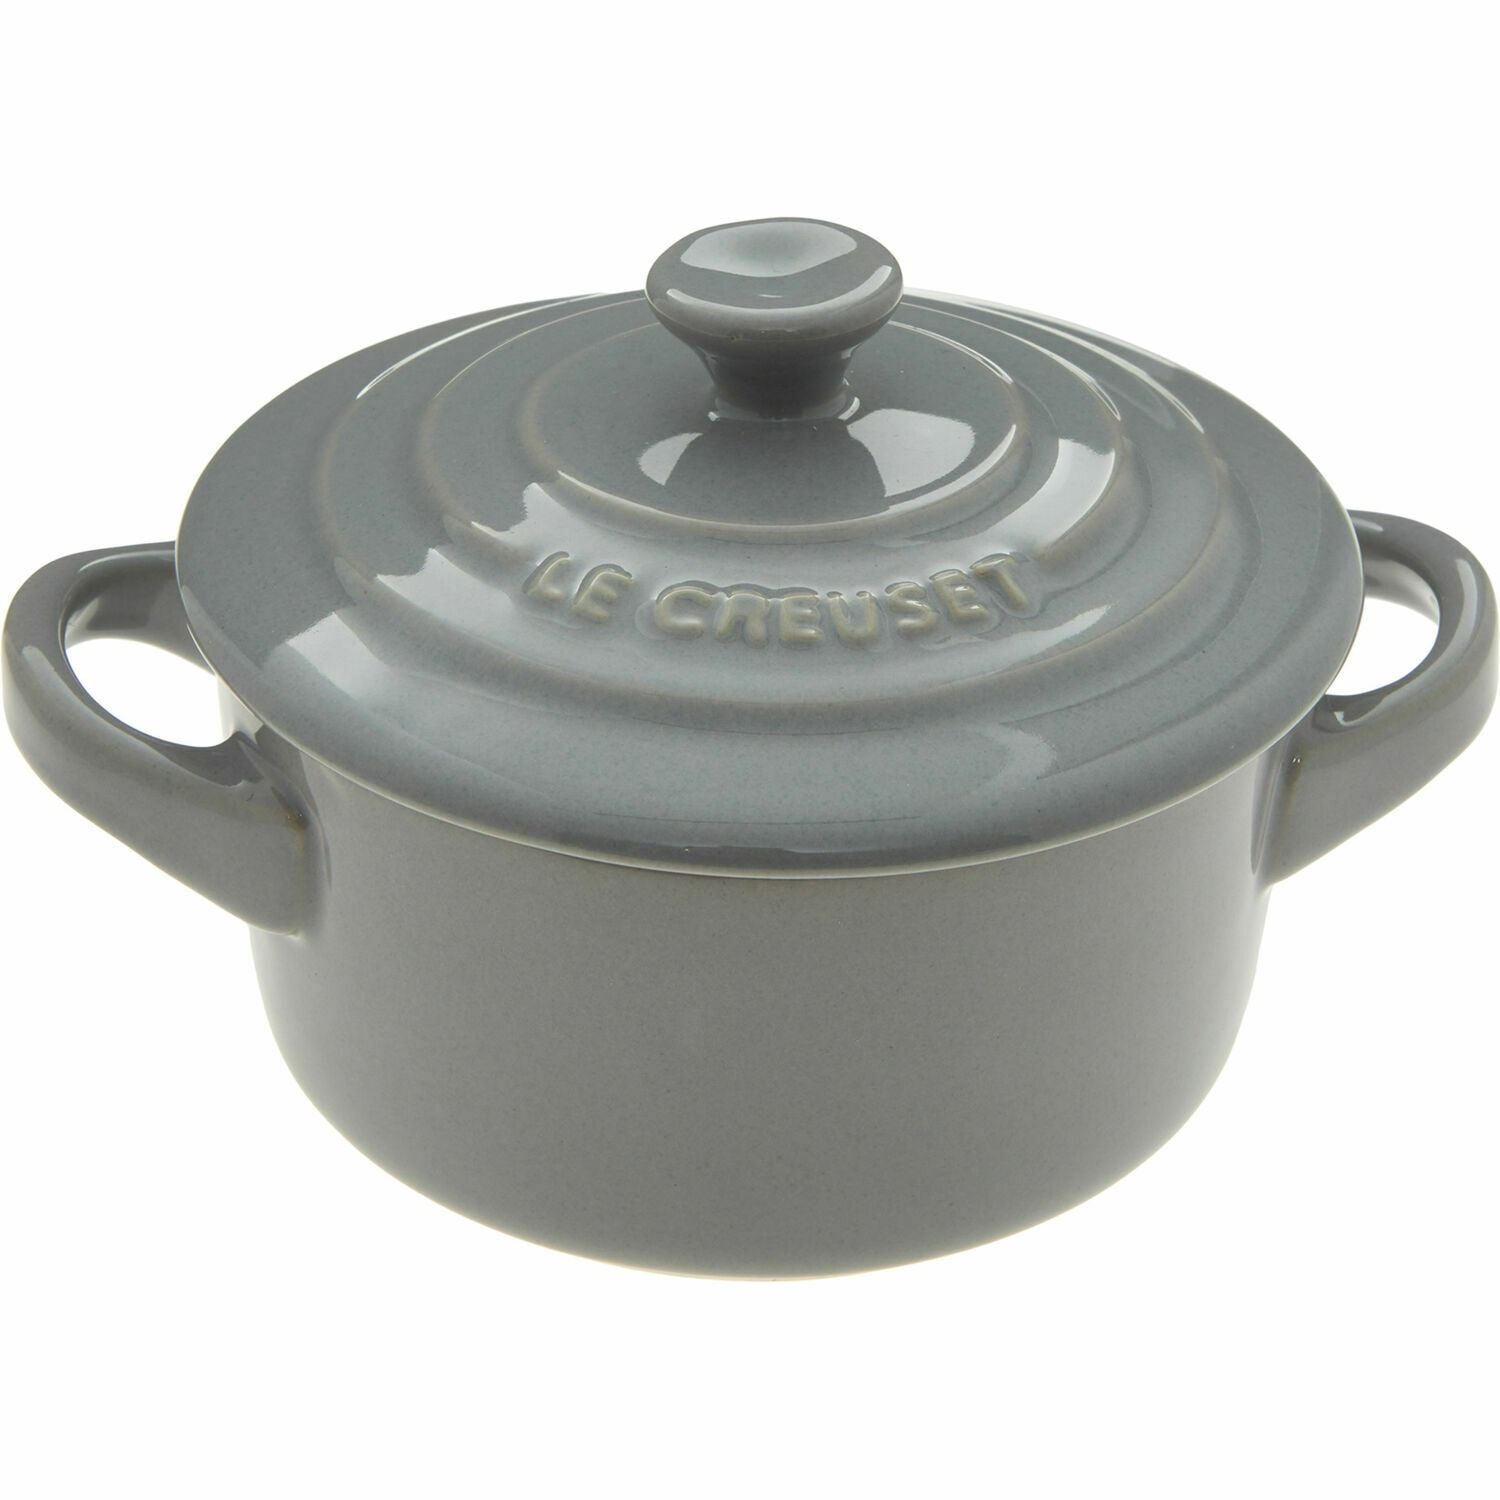 Le Creuset Grey Mini Casserole Pot